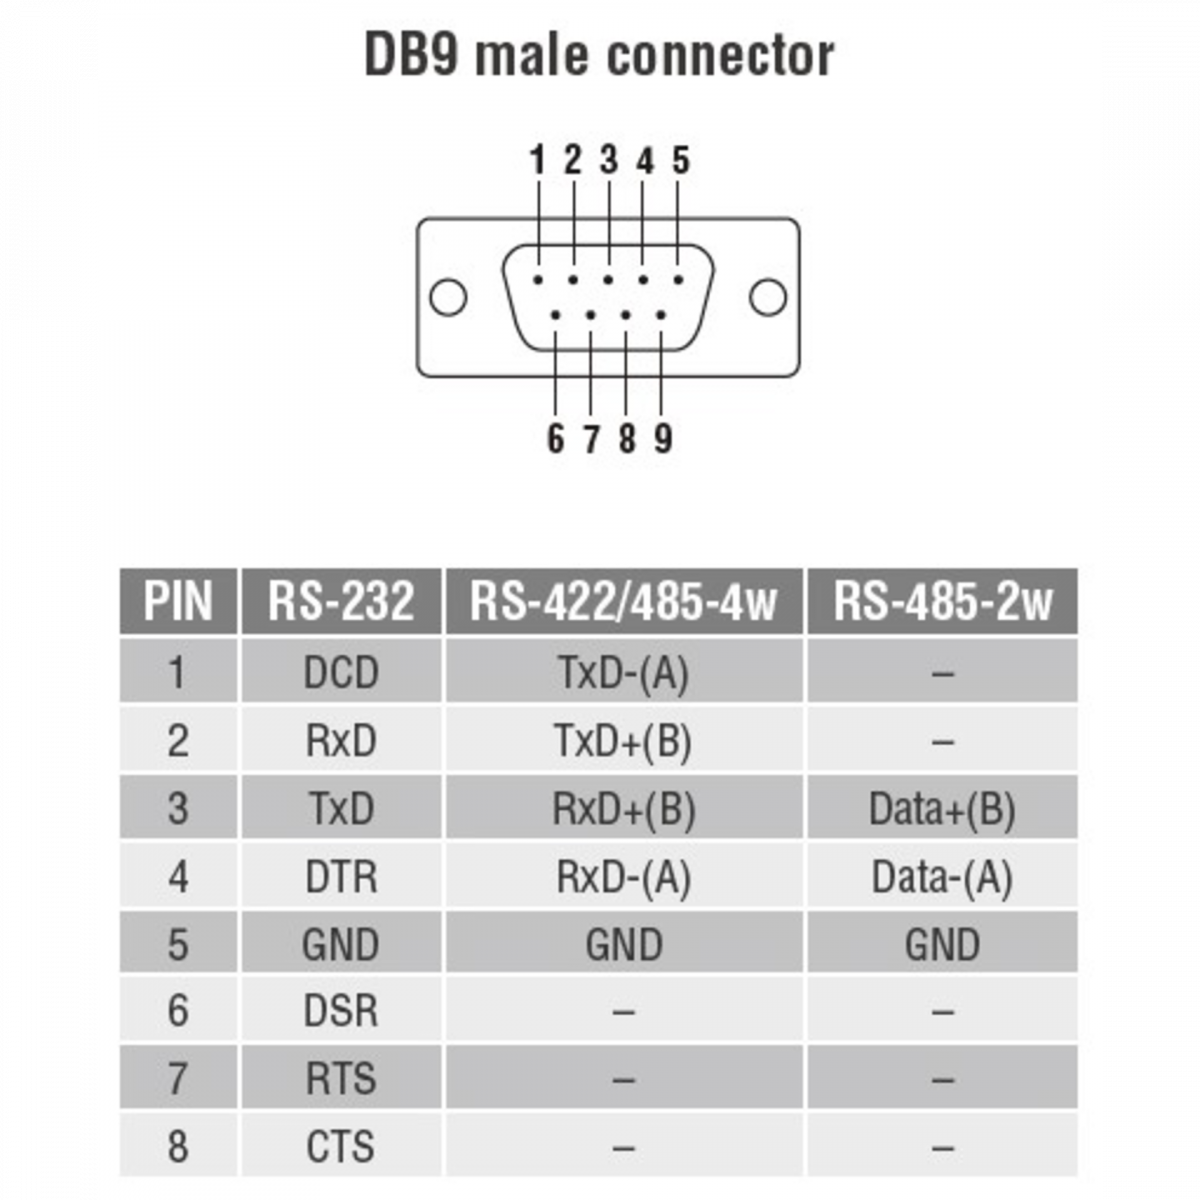 NPort 5150 1-портовый асинхронный сервер RS-232/422/485 в Ethernet MOXA